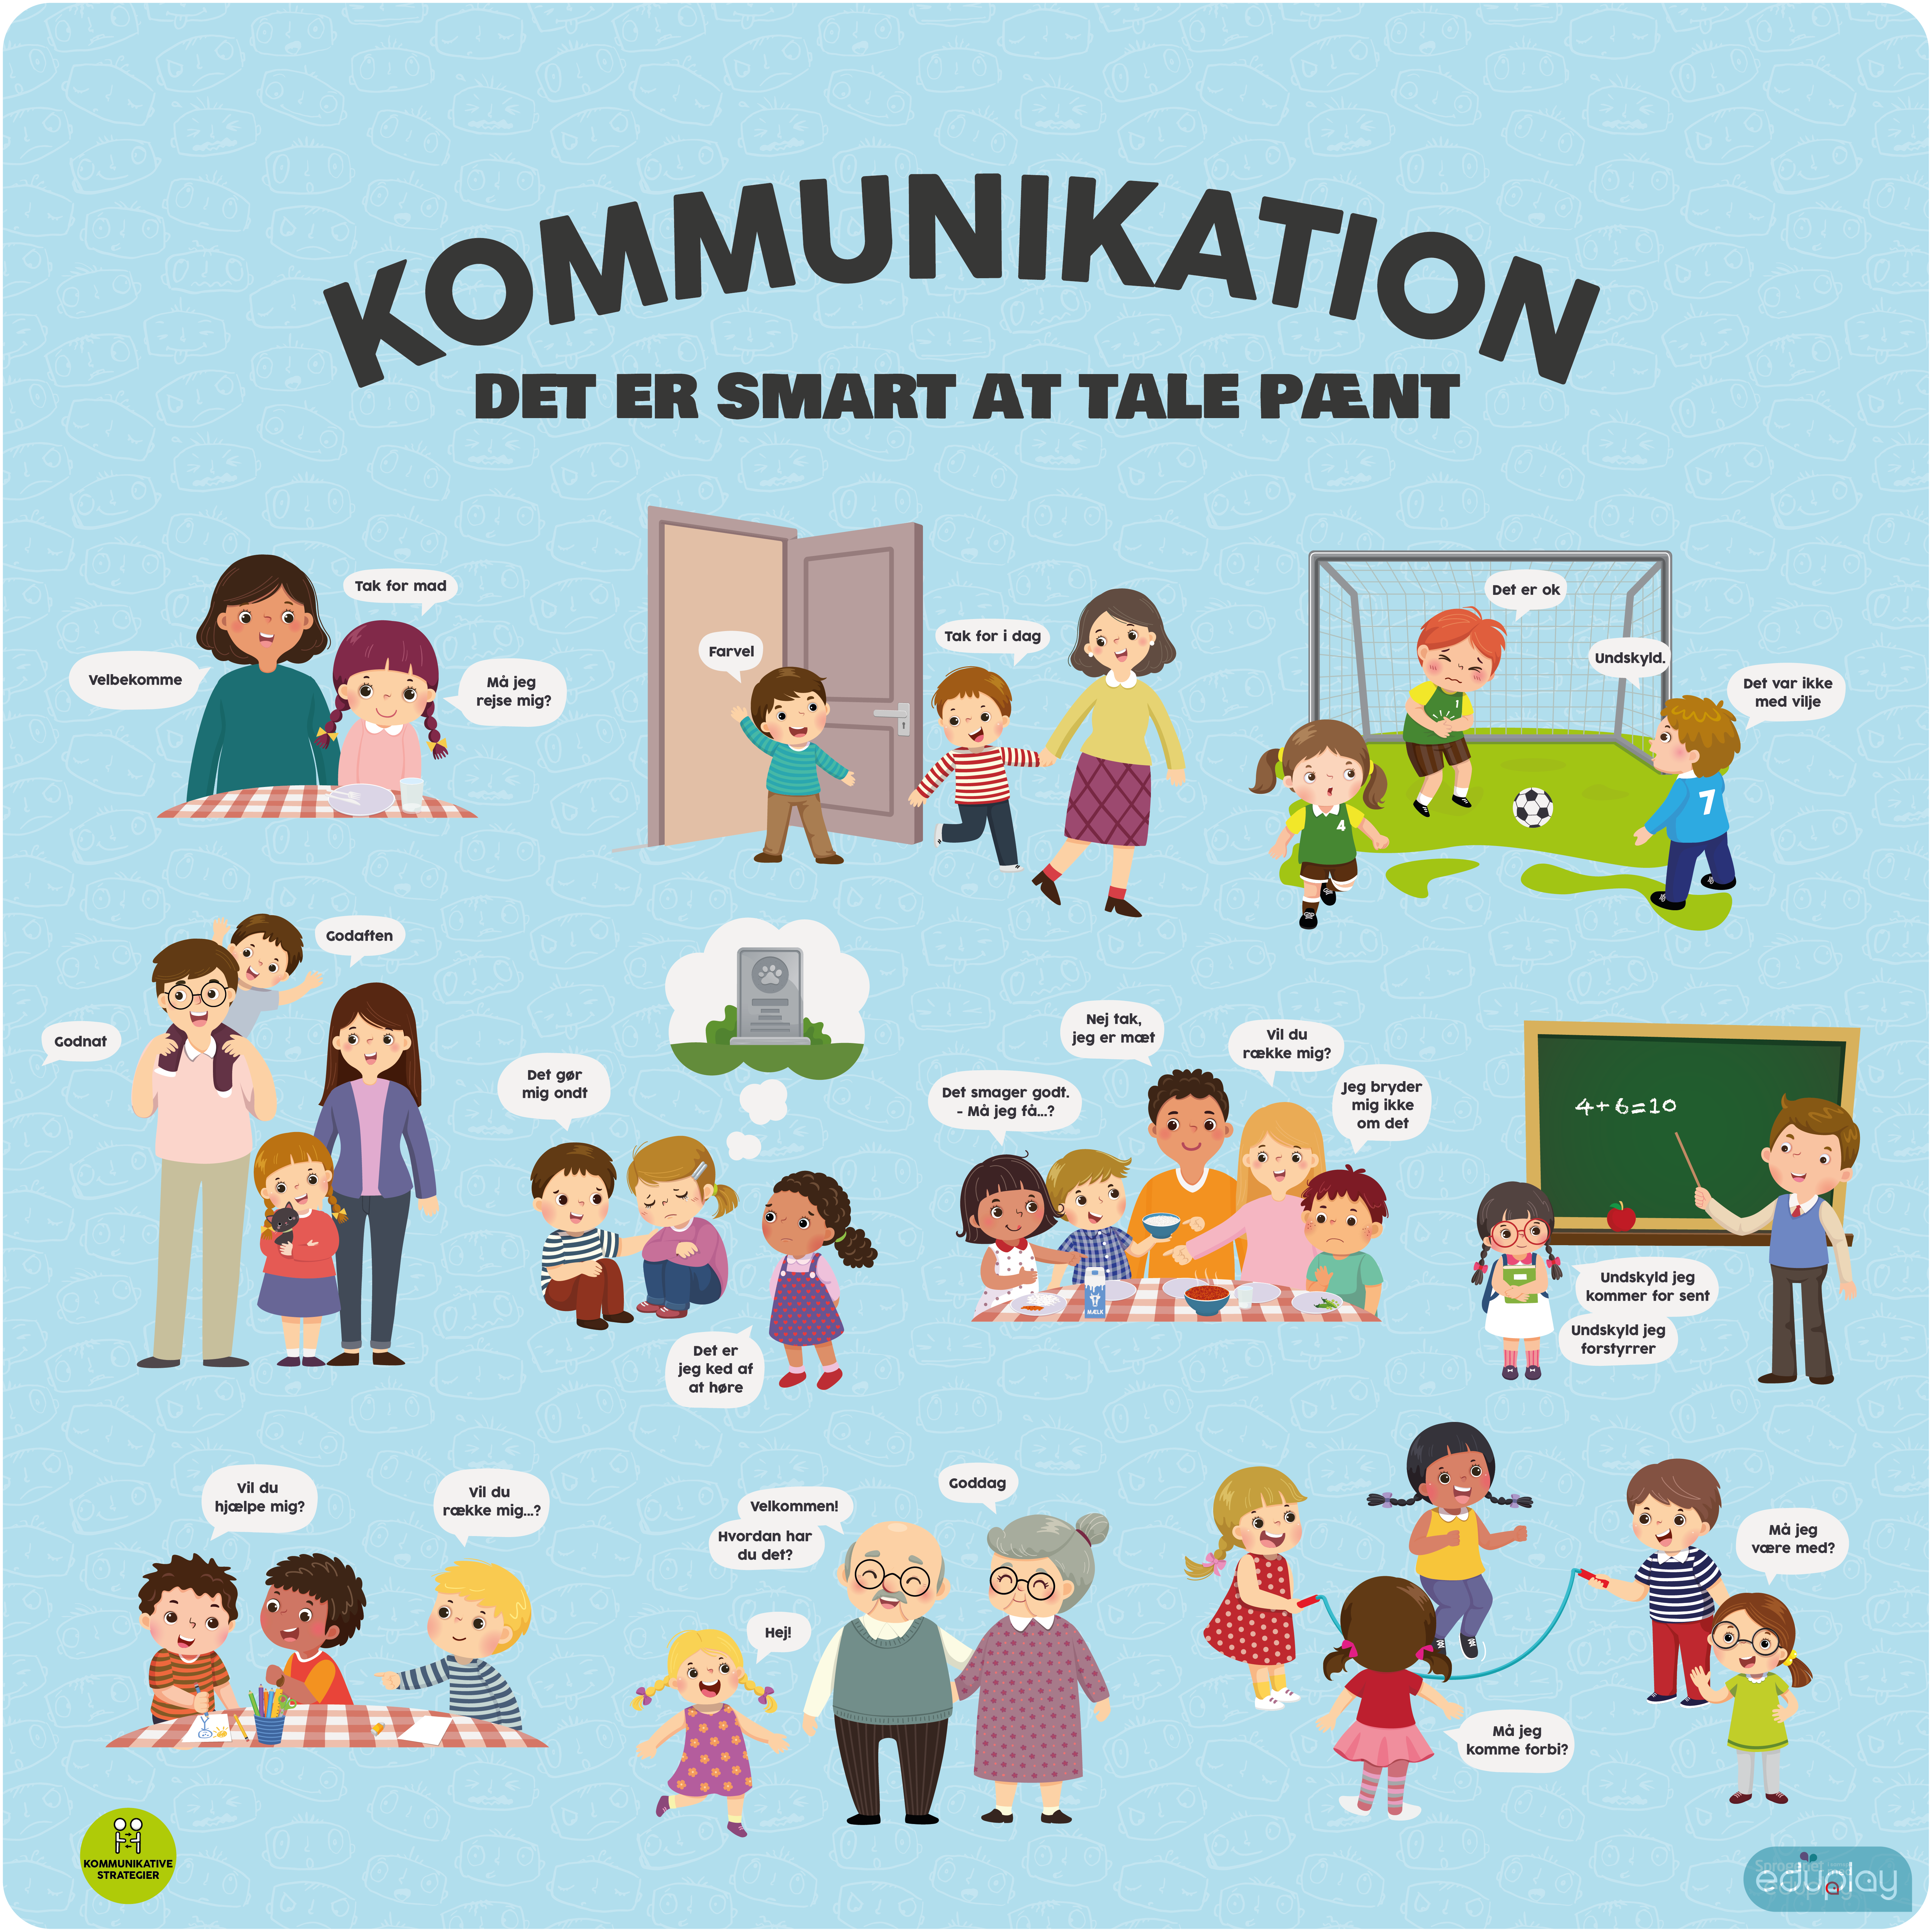 Kommunikation - Det er smart at tale pnt